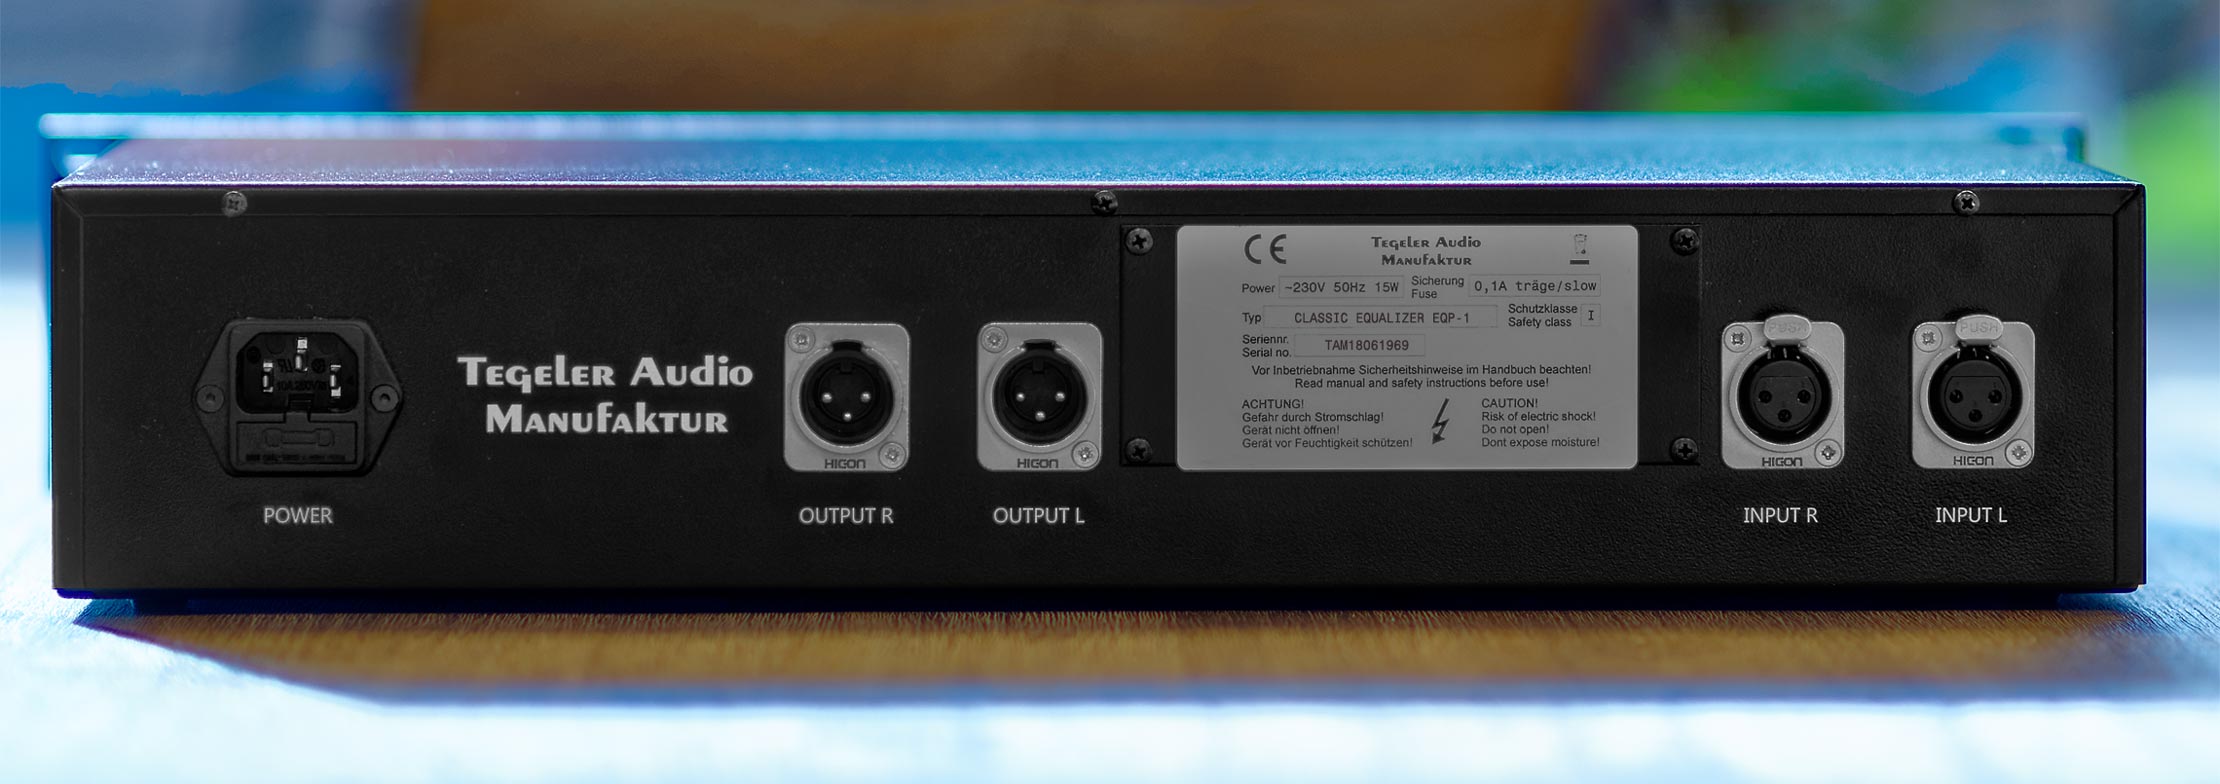 Tegeler Audio Manufaktur Eqp-1 - Equalizer / channel strip - Variation 1